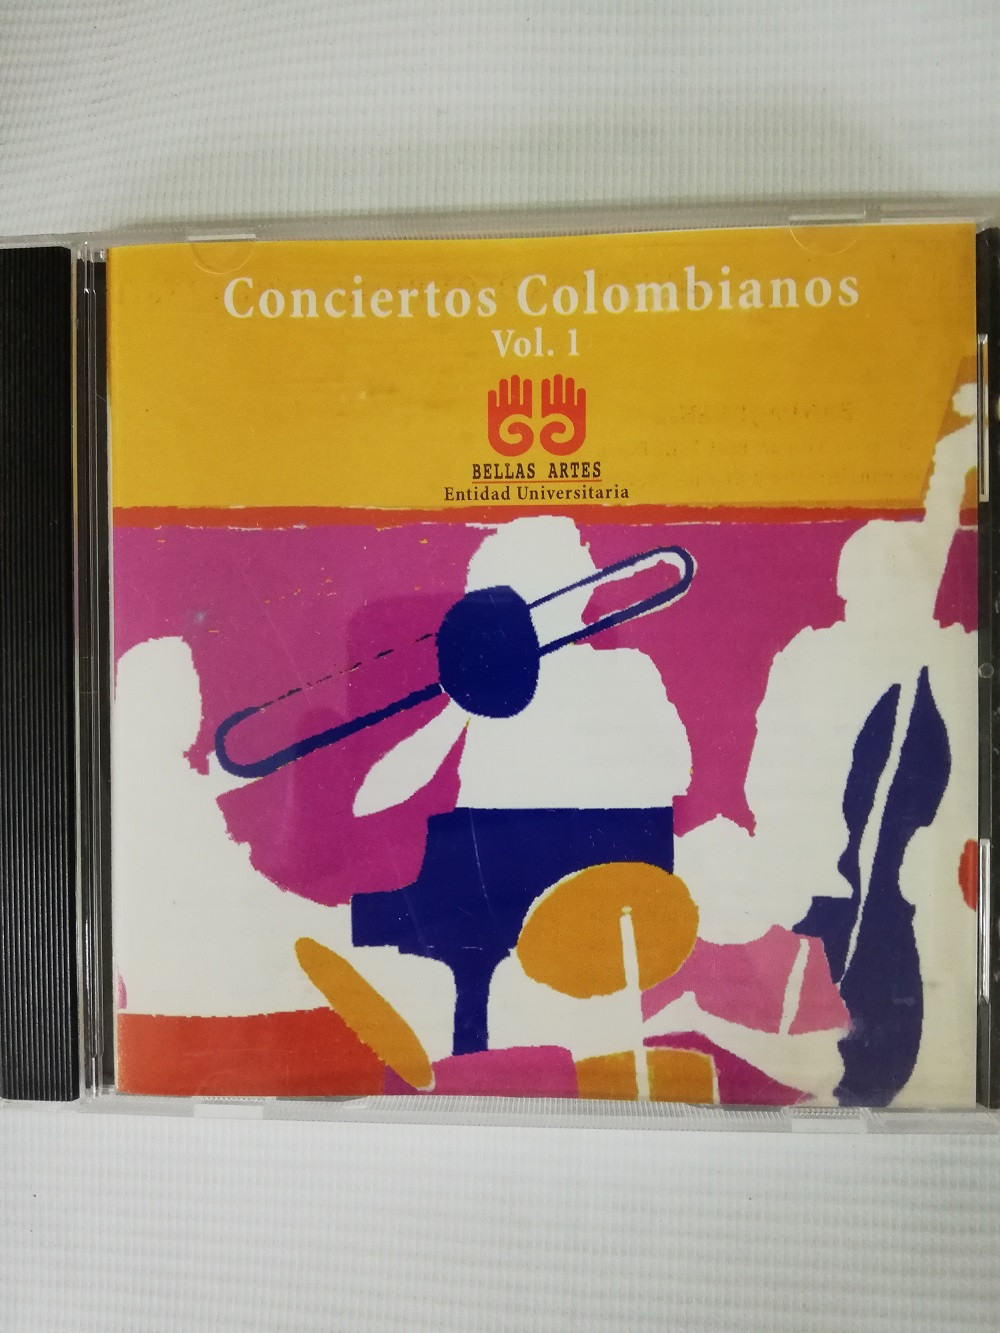 Imagen CD INSTITUTO DEPARTAMENTAL DE BELLAS ARTES - CONCIERTOS COLOMBIANOS VOL. 1 1